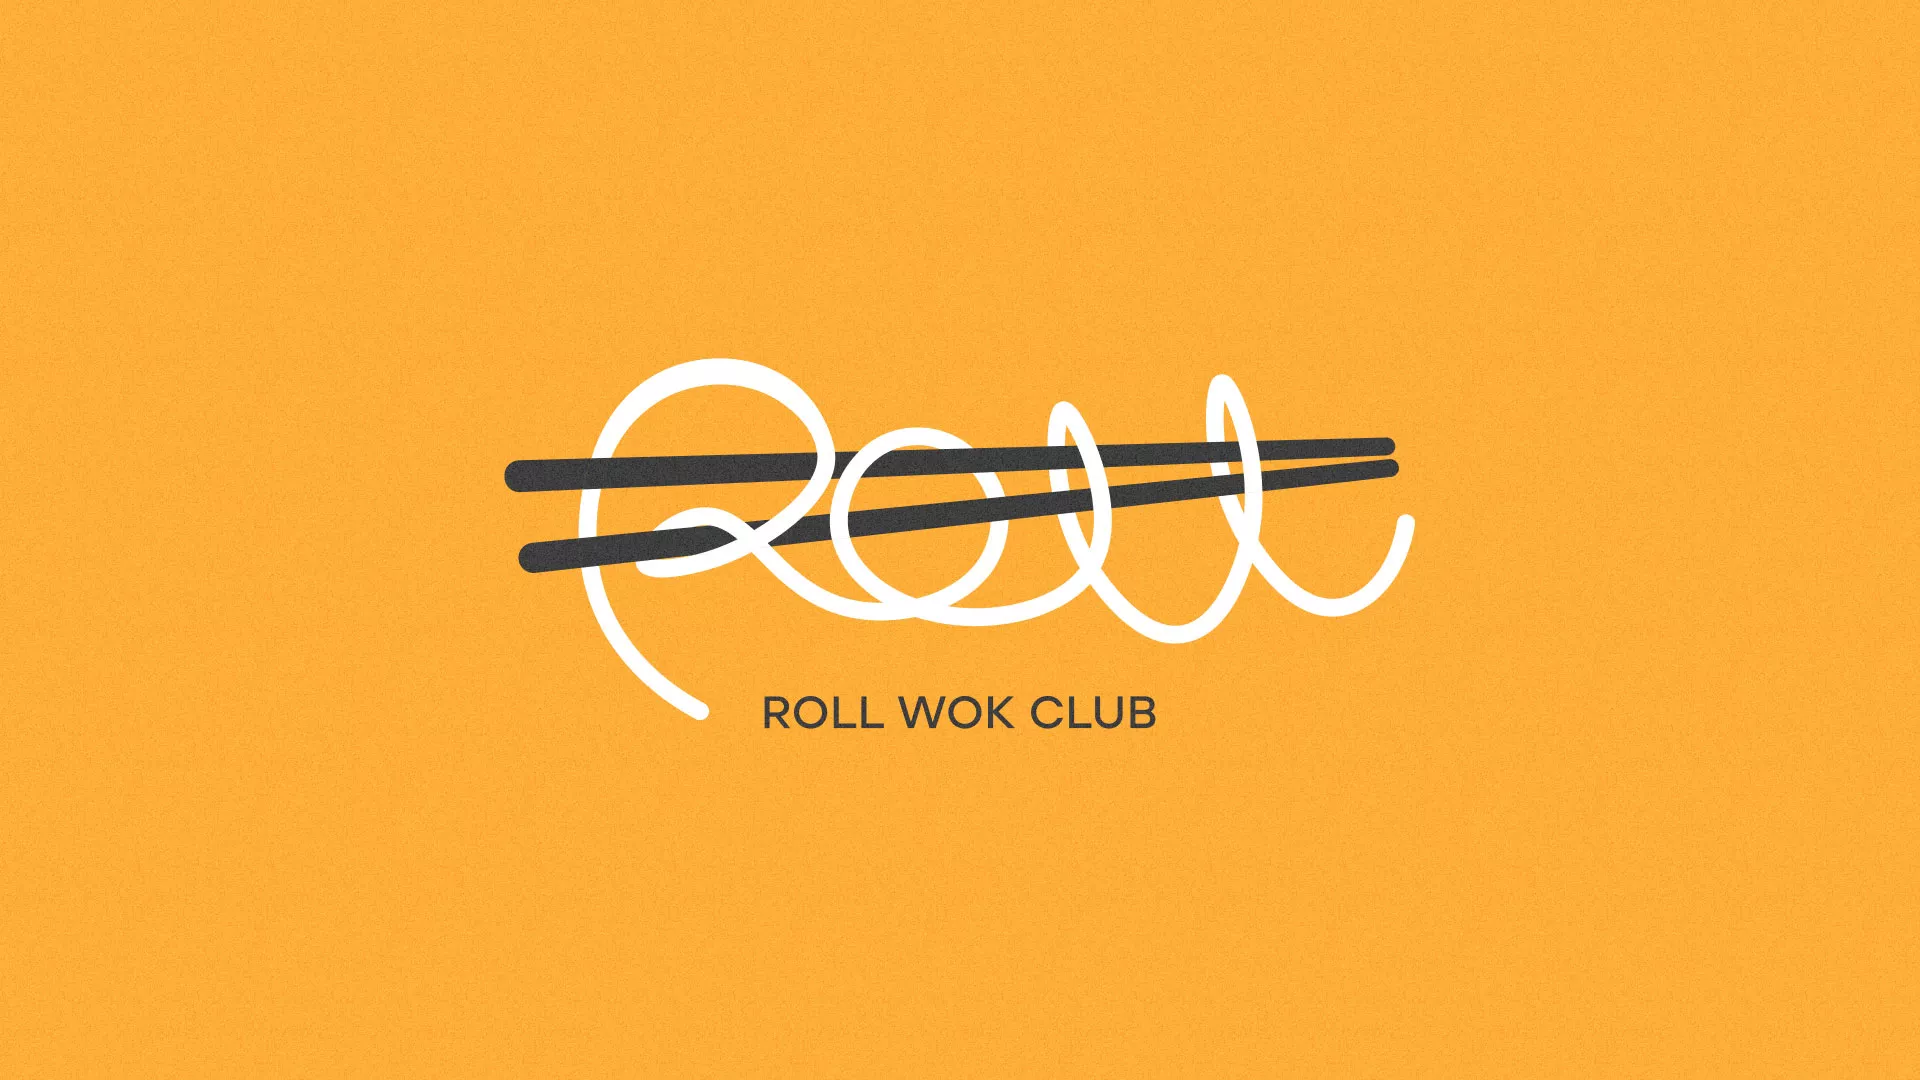 Создание дизайна упаковки суши-бара «Roll Wok Club» в Звенигово